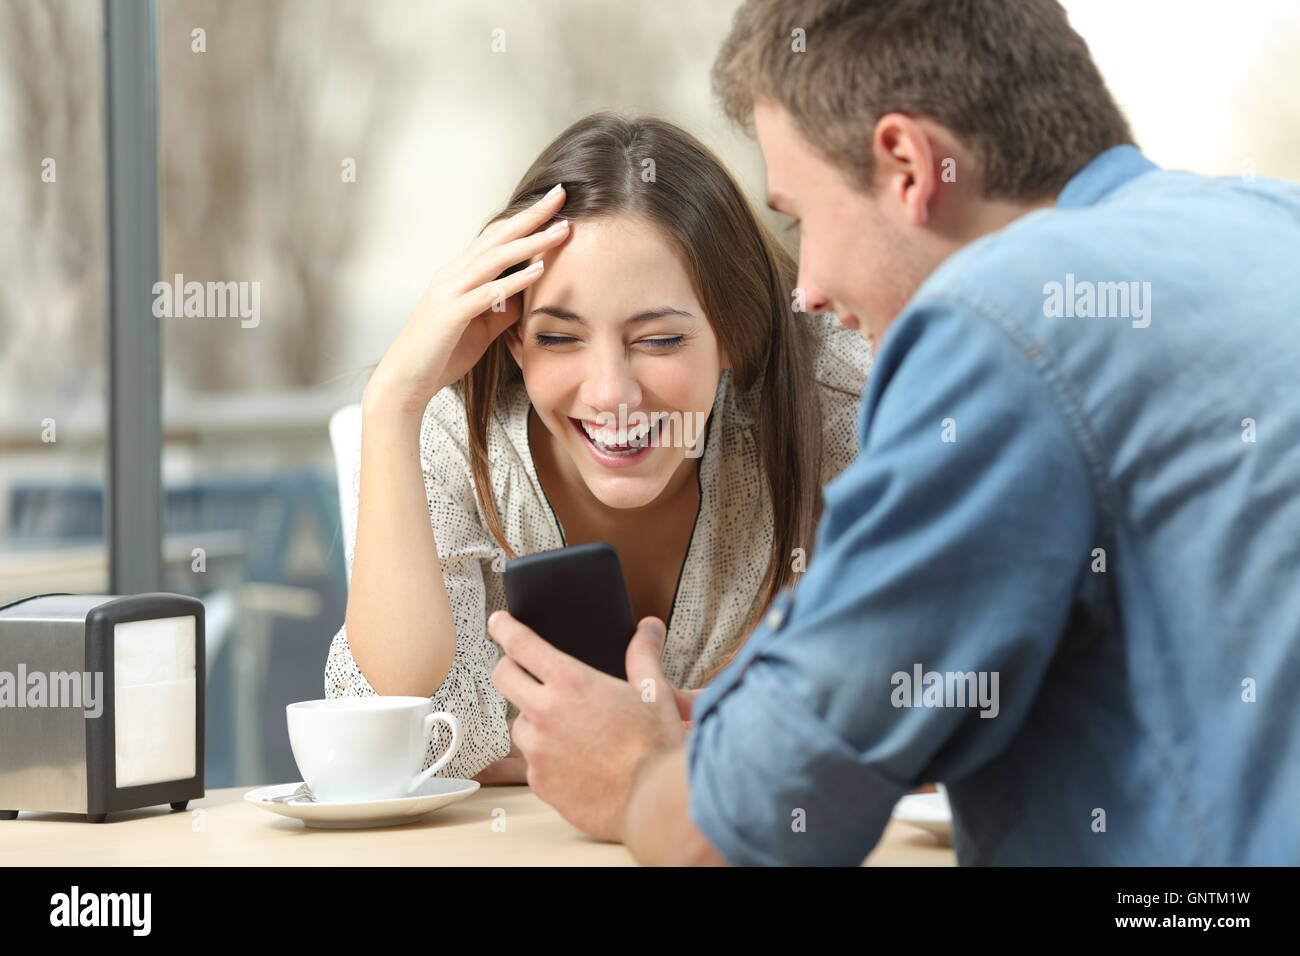 Allegro giovane ridere guardare i media in smart phone seduti in un caffè Foto Stock